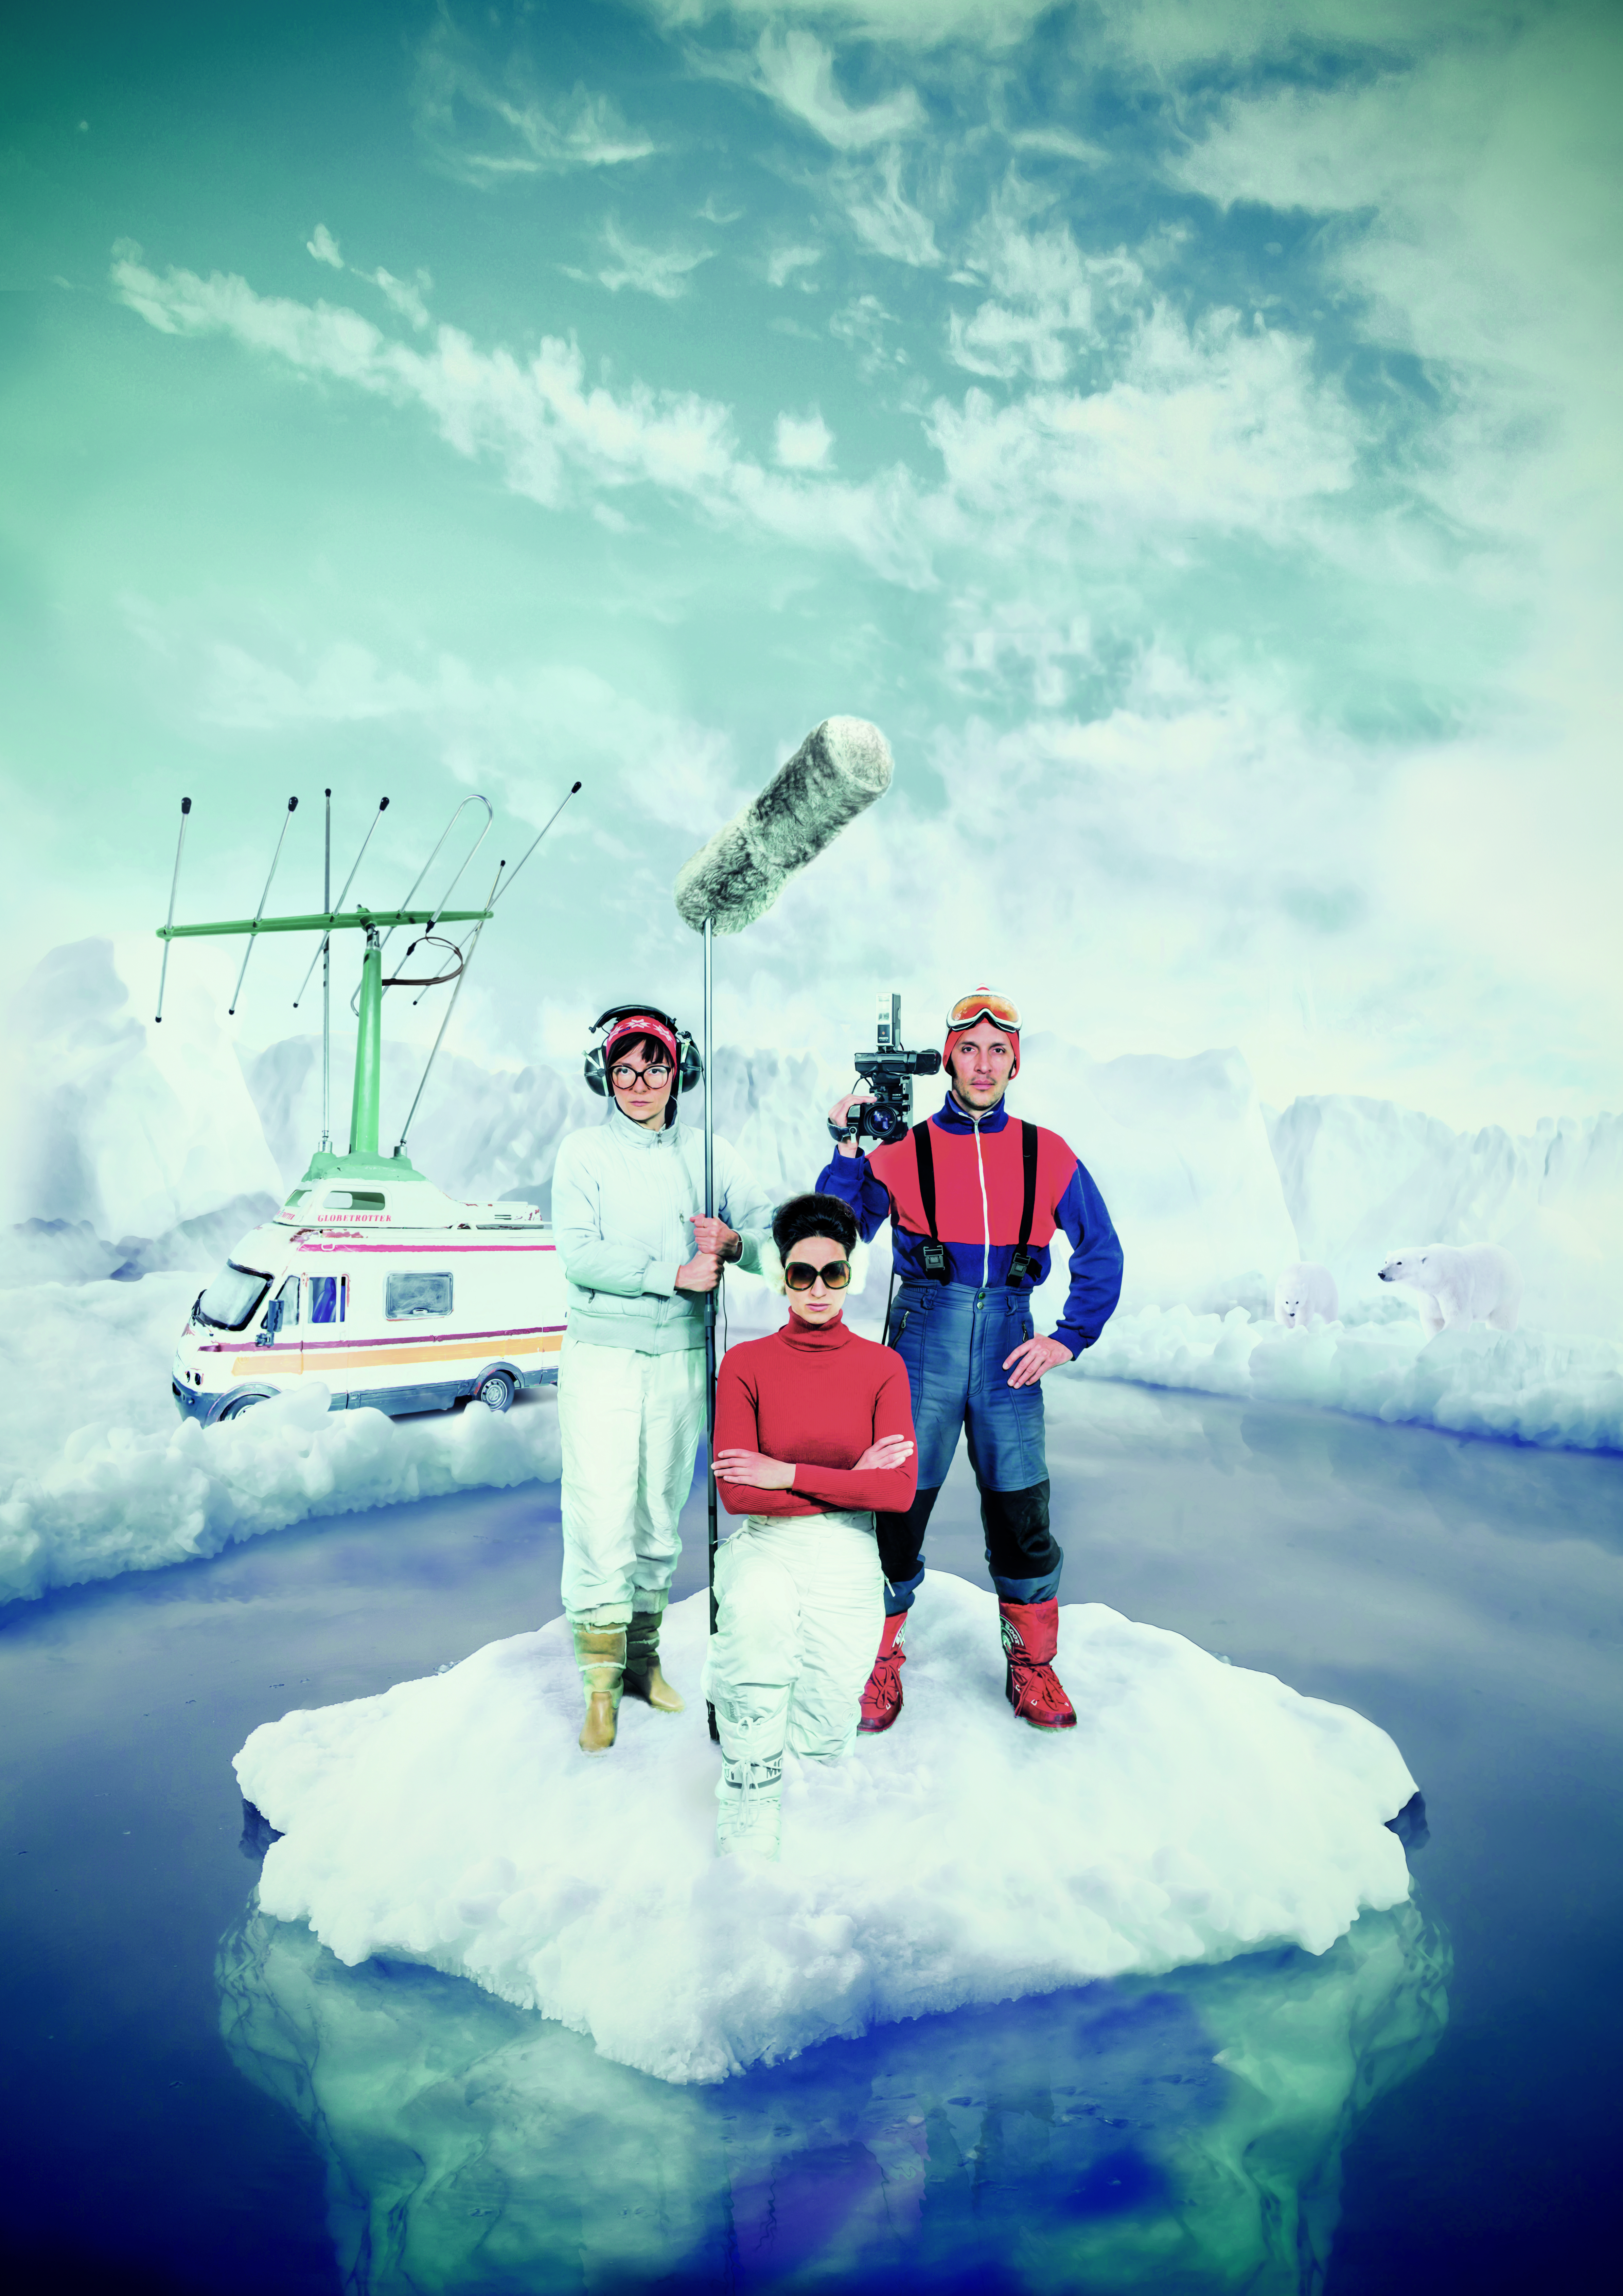 Au premier plan trois personnes nous font face debout sur un iceberg. Elles sont équipées de vêtements d'hiver. L'une d'entre elles porte des lunettes de soleil et est vêtue de pantalons blancs et d'un pull-over rouge croise les bras. Derrière elle, de chaque côté, se trouvent à droite un caméraman, caméra à l'épaule, vêtu de rouge et bleu et, à gauche d'une preneuse de son tenant un grand micro avec un casque audio sur les oreilles et toute vêtue de blanc. Derrière eux, au lointain, on voit la banquise sur laquelle se trouve leur bus surmonté d'une grande antenne et... des ours blancs.